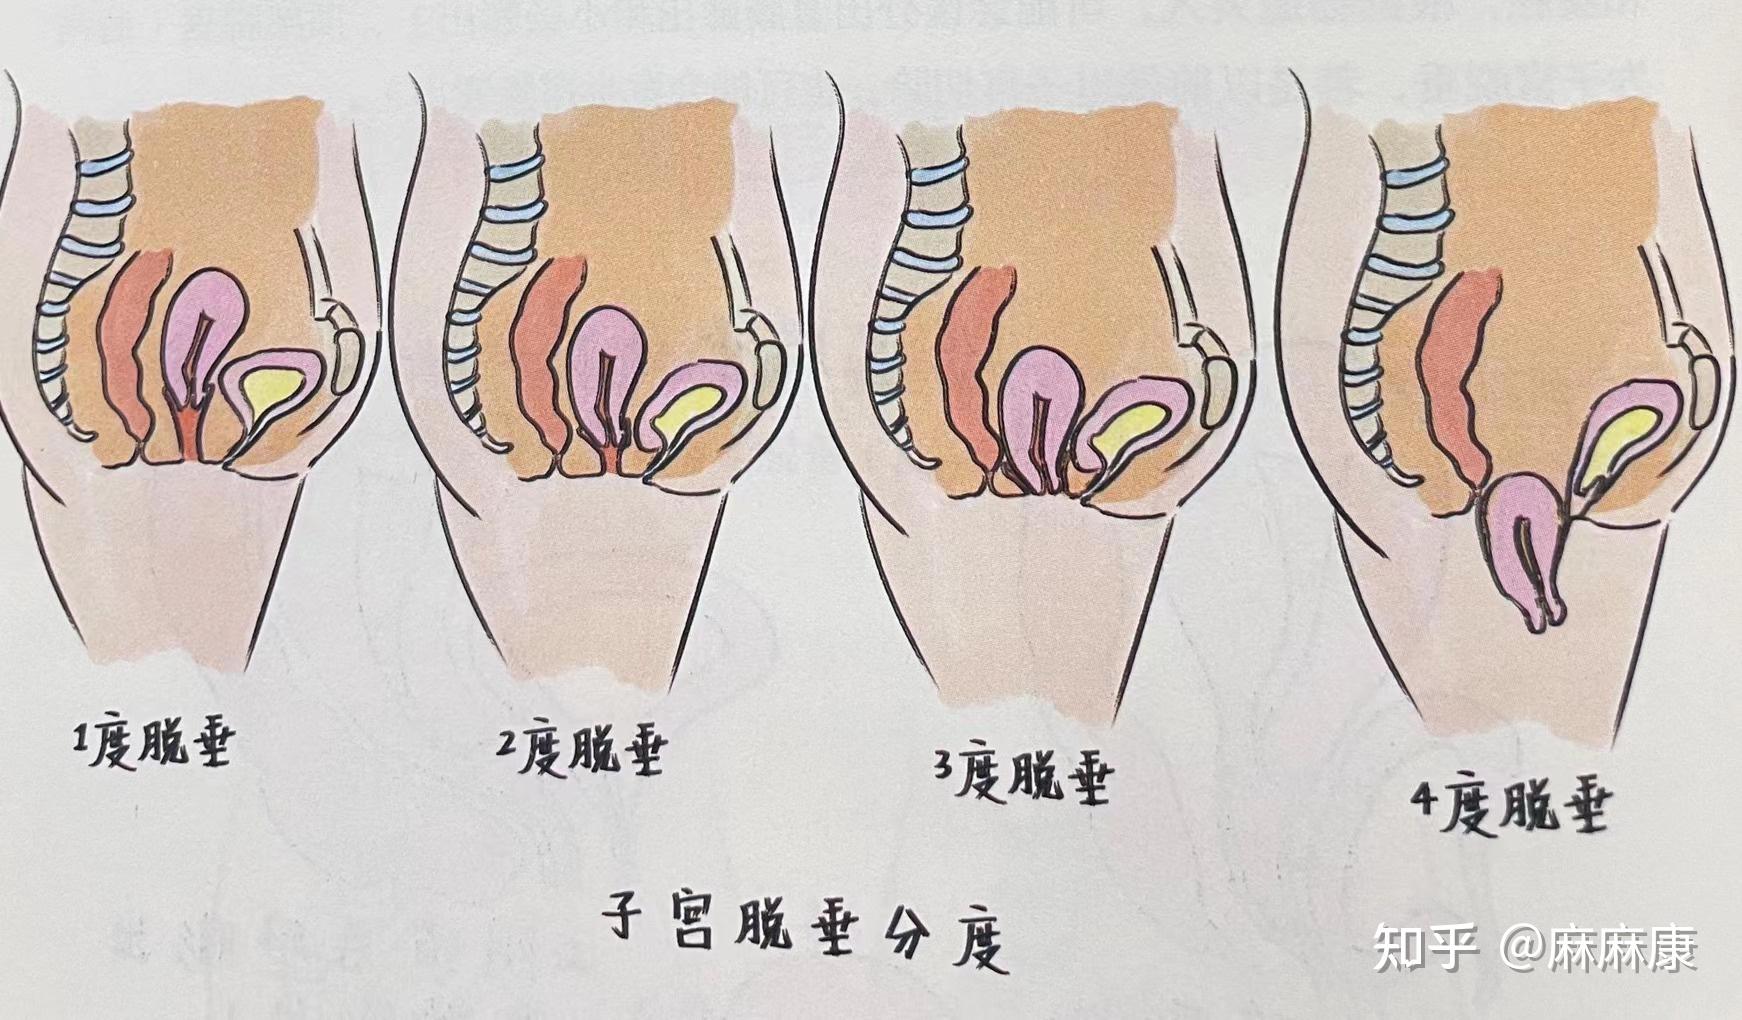 女性膀胱膨出图 子宫图片